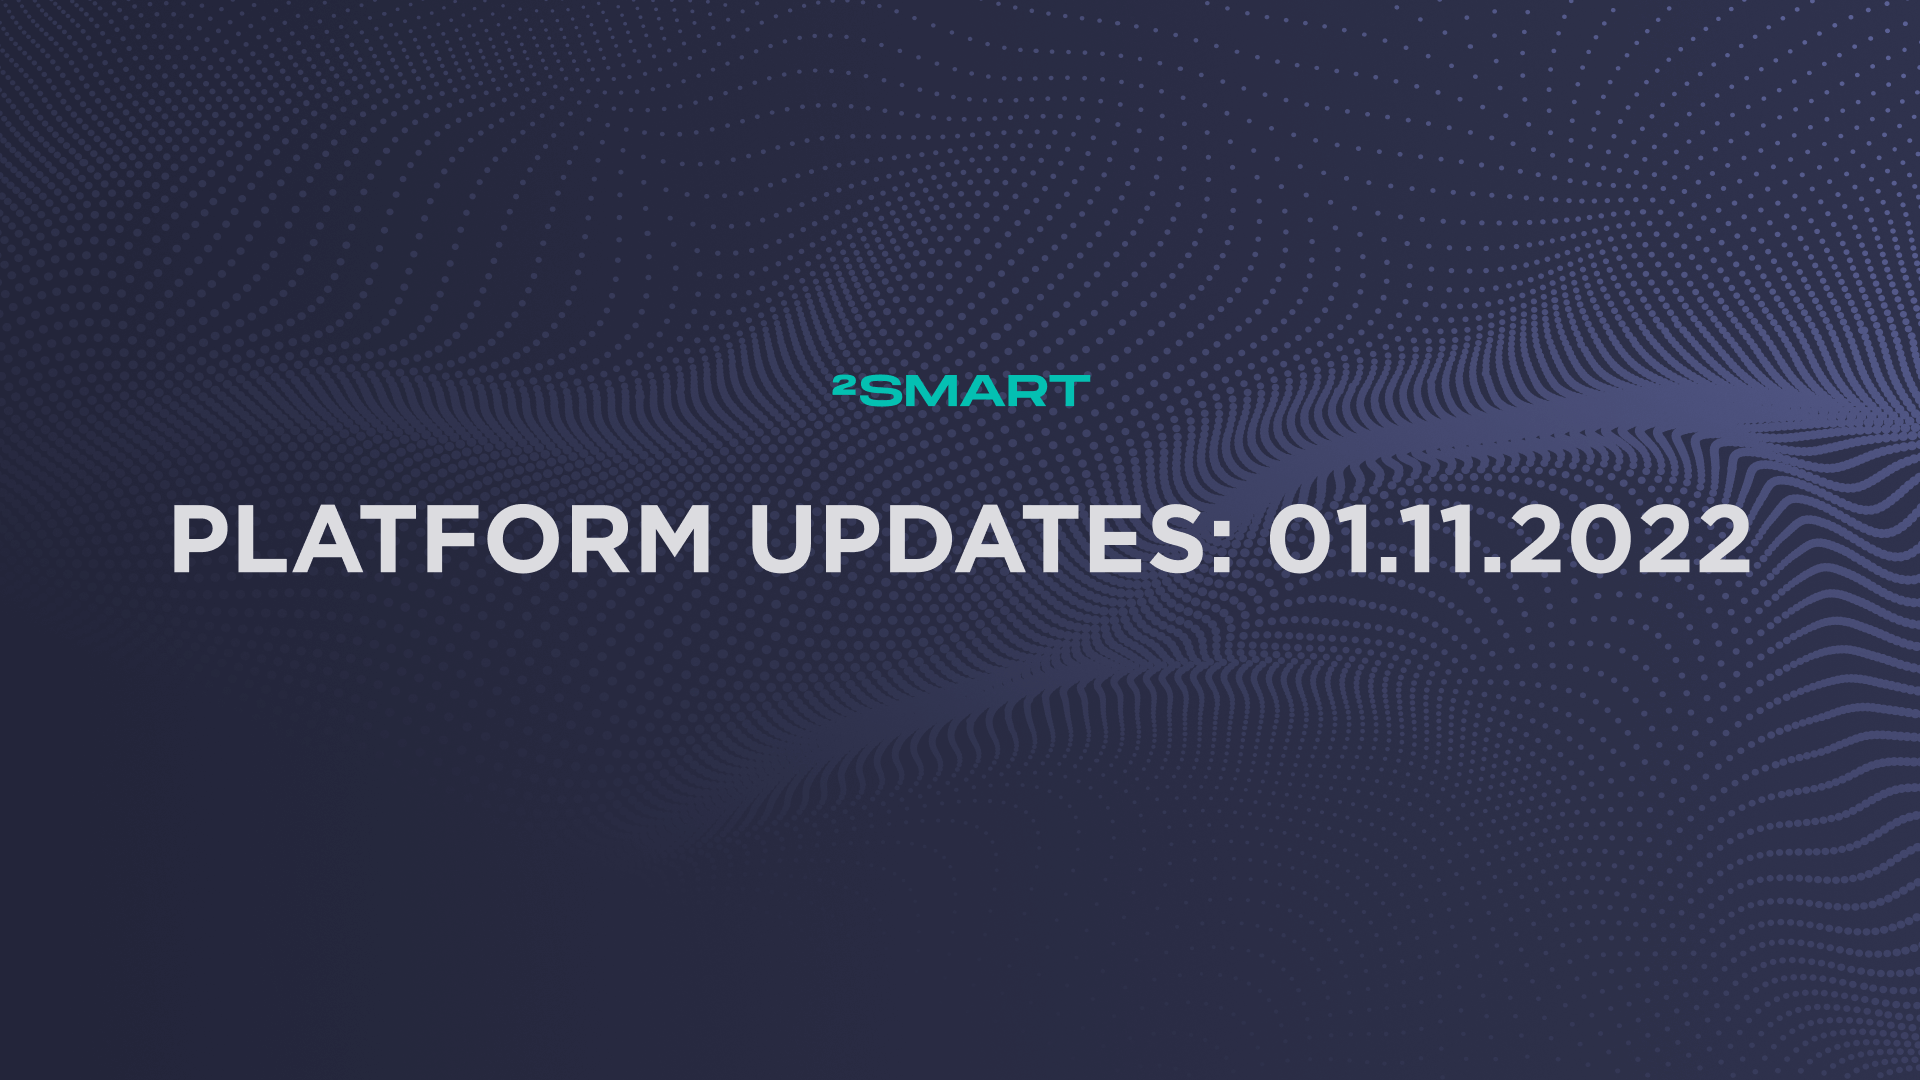 Platform updates: 01.11.2022